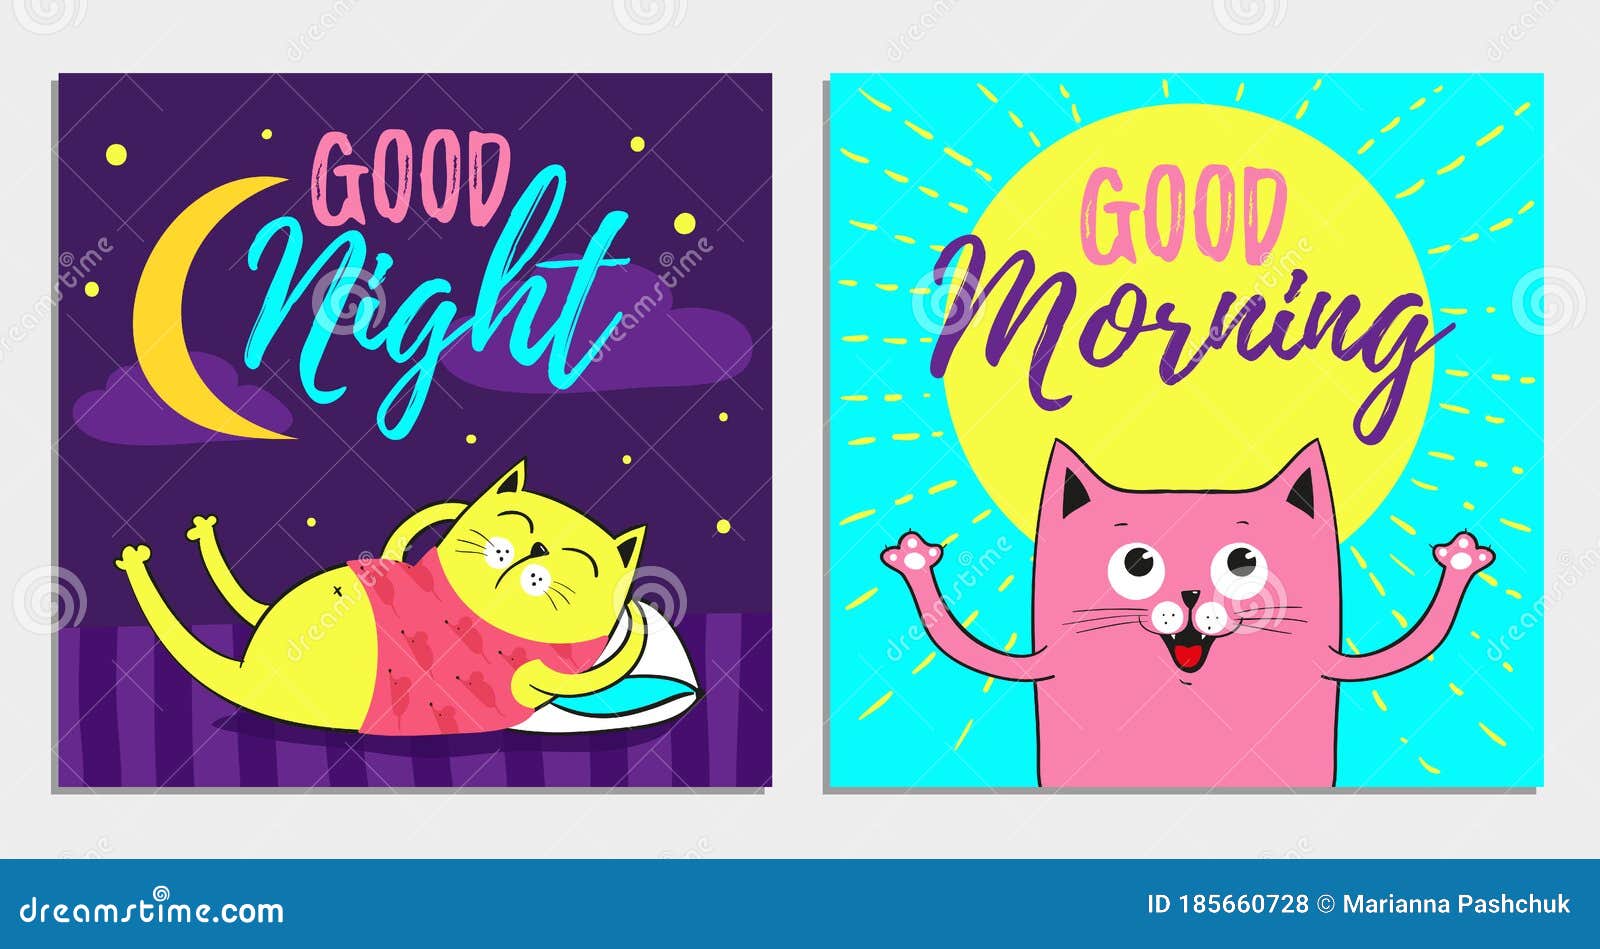 Funny Cartoon Vector Cat Illustrations, Good Night, Morning Stock ...